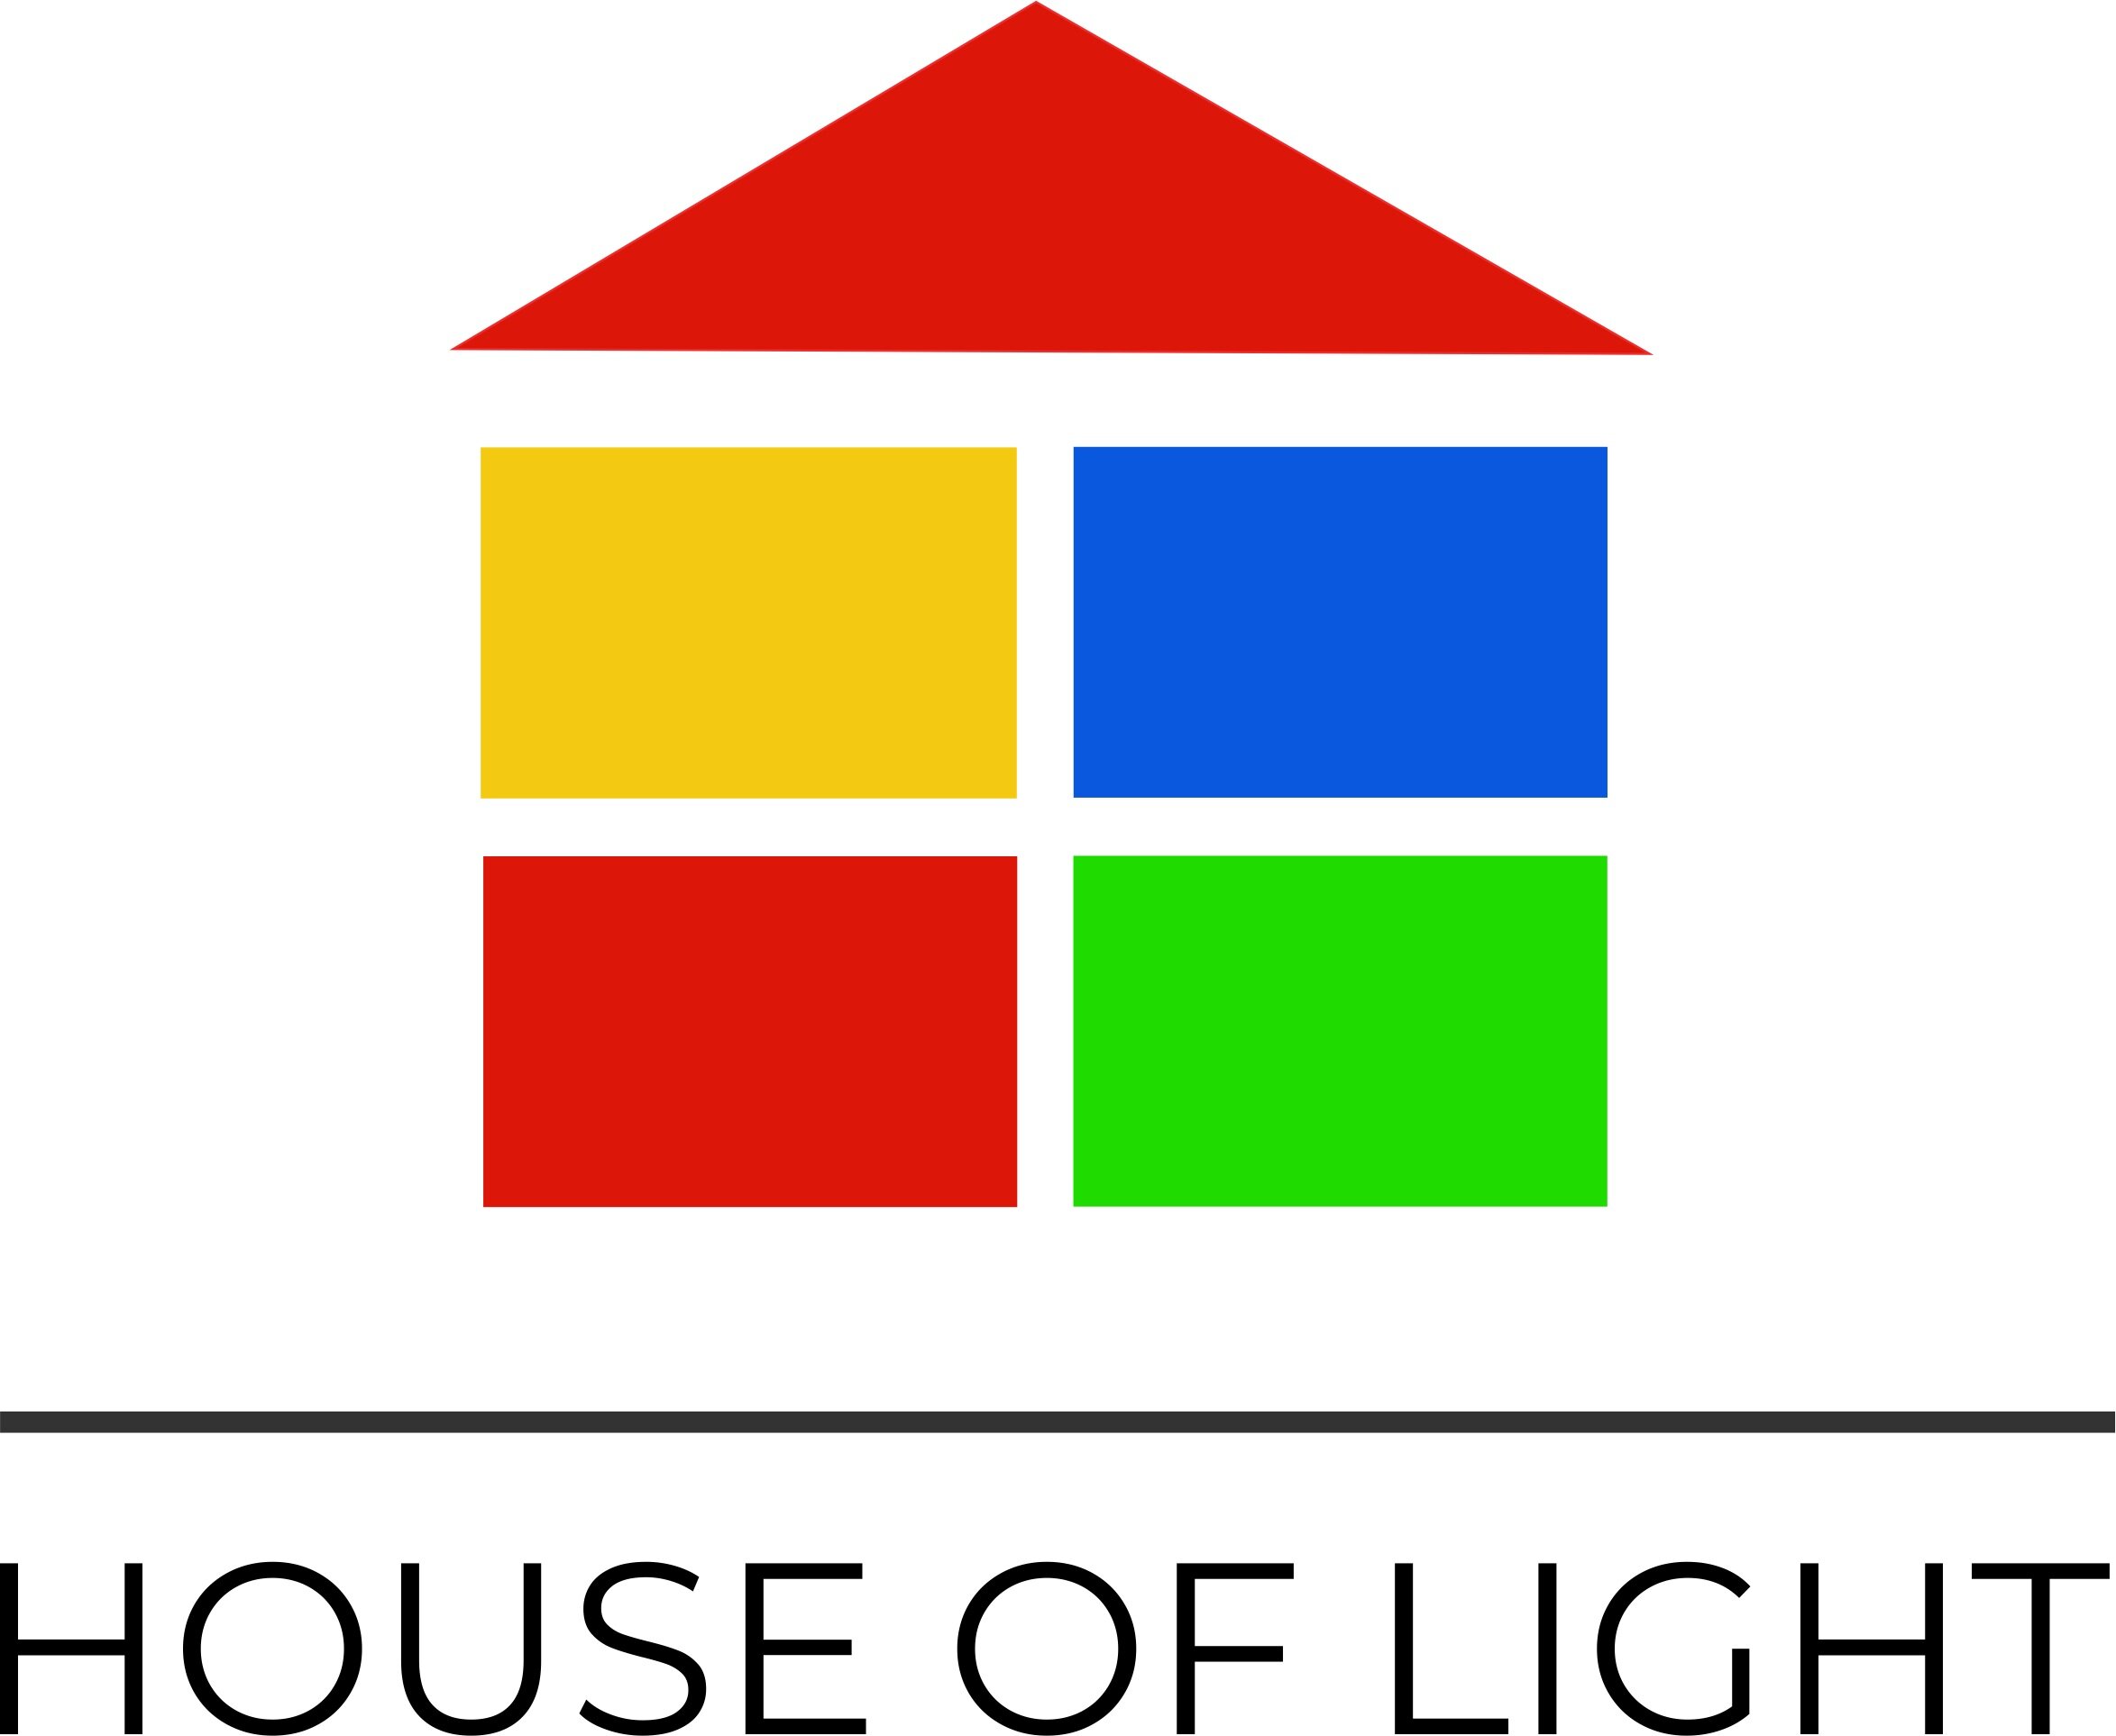 HOUSE OF LIGHT